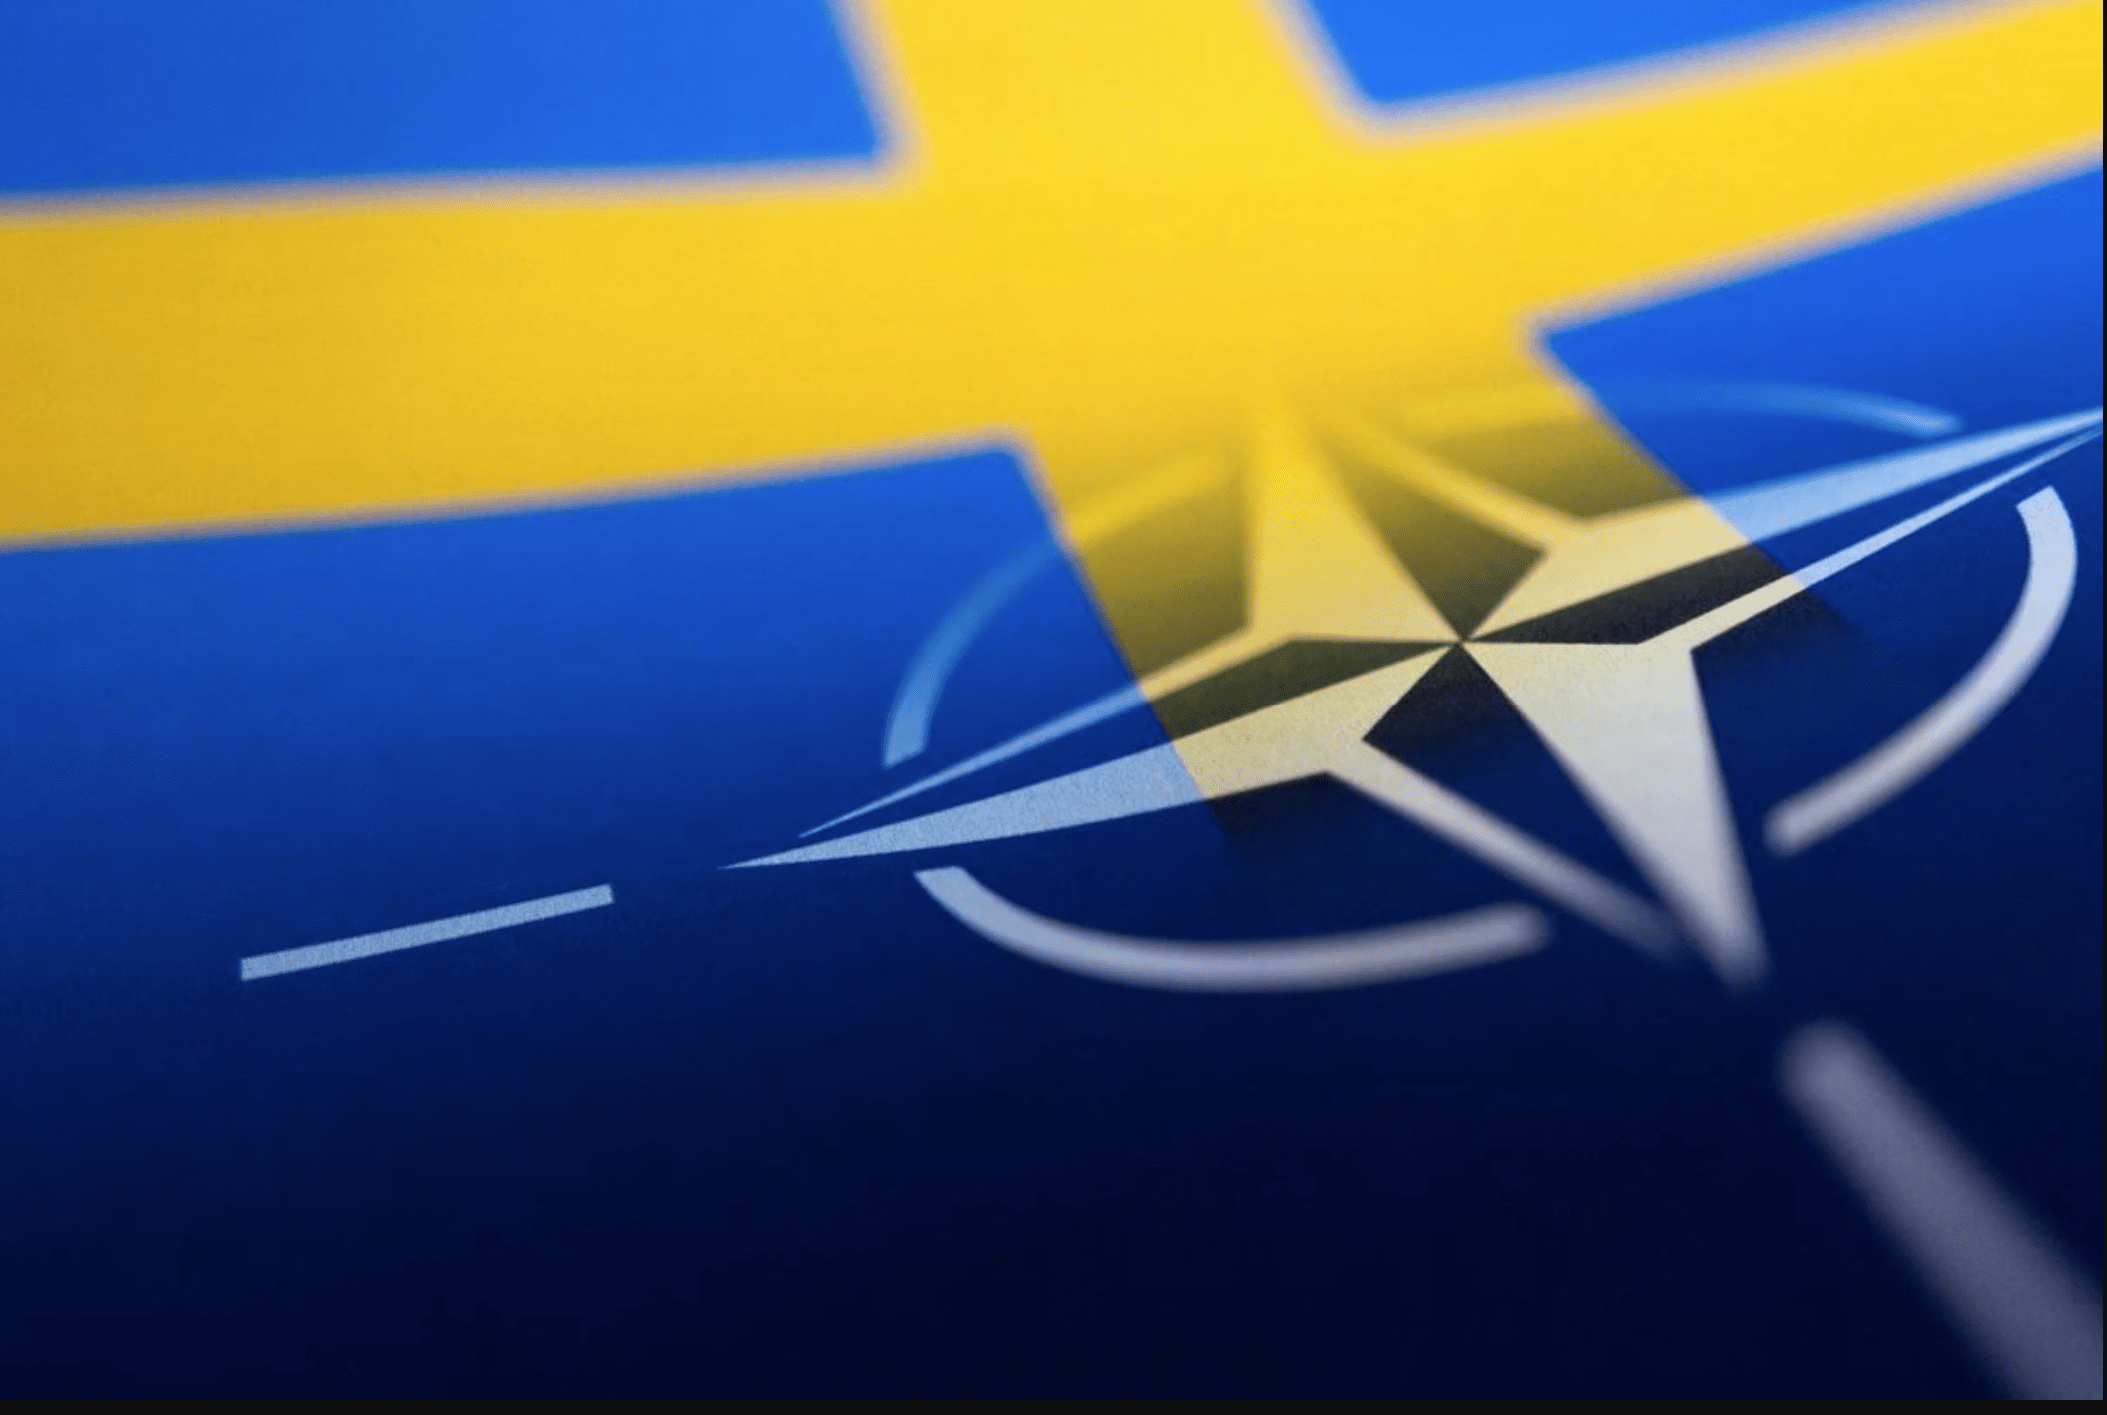 سوئد در راستای توافق ناتو، با استرداد یک مرد کرد تبار به ترکیه موافقت کرد